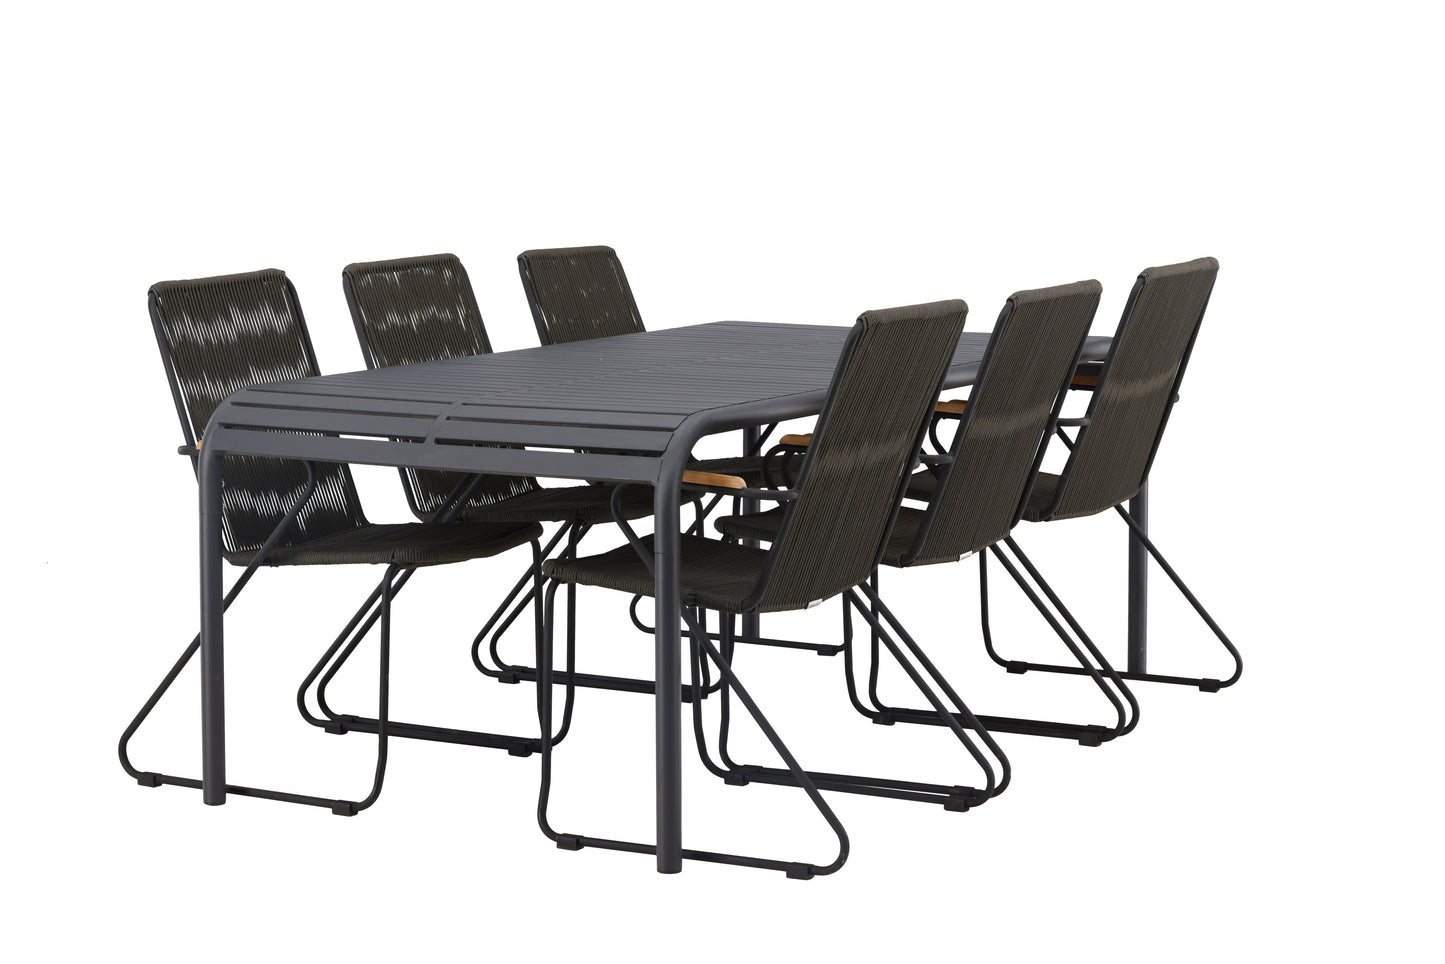 Borneo - Spisebord, Aluminium - Sort / Rektangulær 100*200* + Bois stol Stål - Sort / Mørkegrå Reb